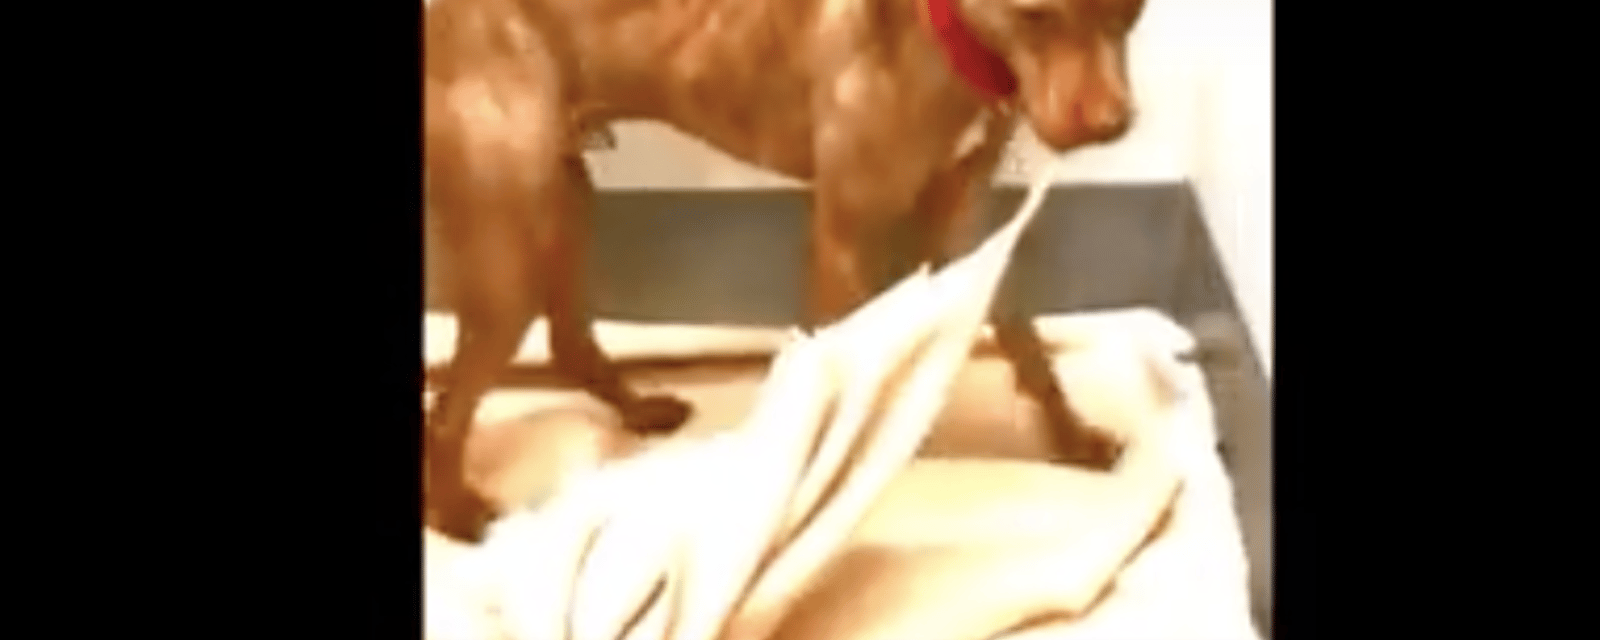 Vidéo: Ce chien de refuge mal-aimé a décidé de faire son lit lui-même